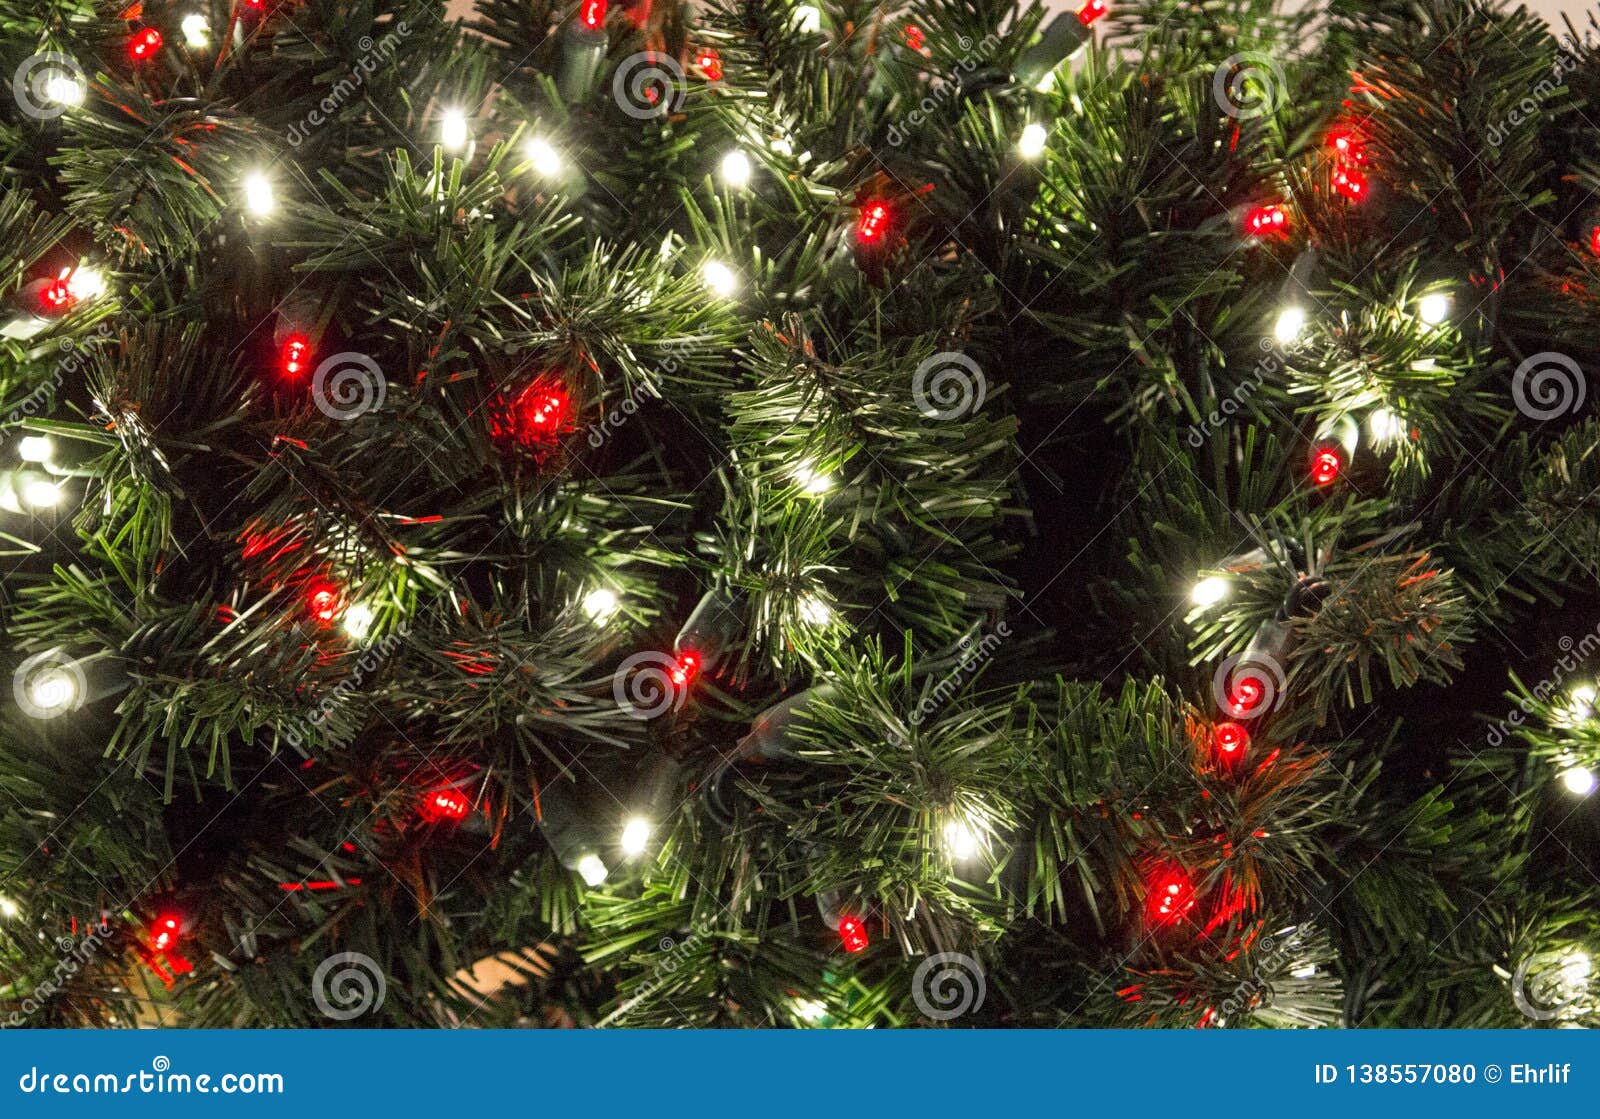 Hãy cùng thưởng thức một cây thông Noel đa màu sắc lung linh, đầy sắc màu và sự sống động. Cây thông đặc biệt này sẽ khiến cho không gian lễ hội của bạn thêm phần sinh động và ấn tượng.